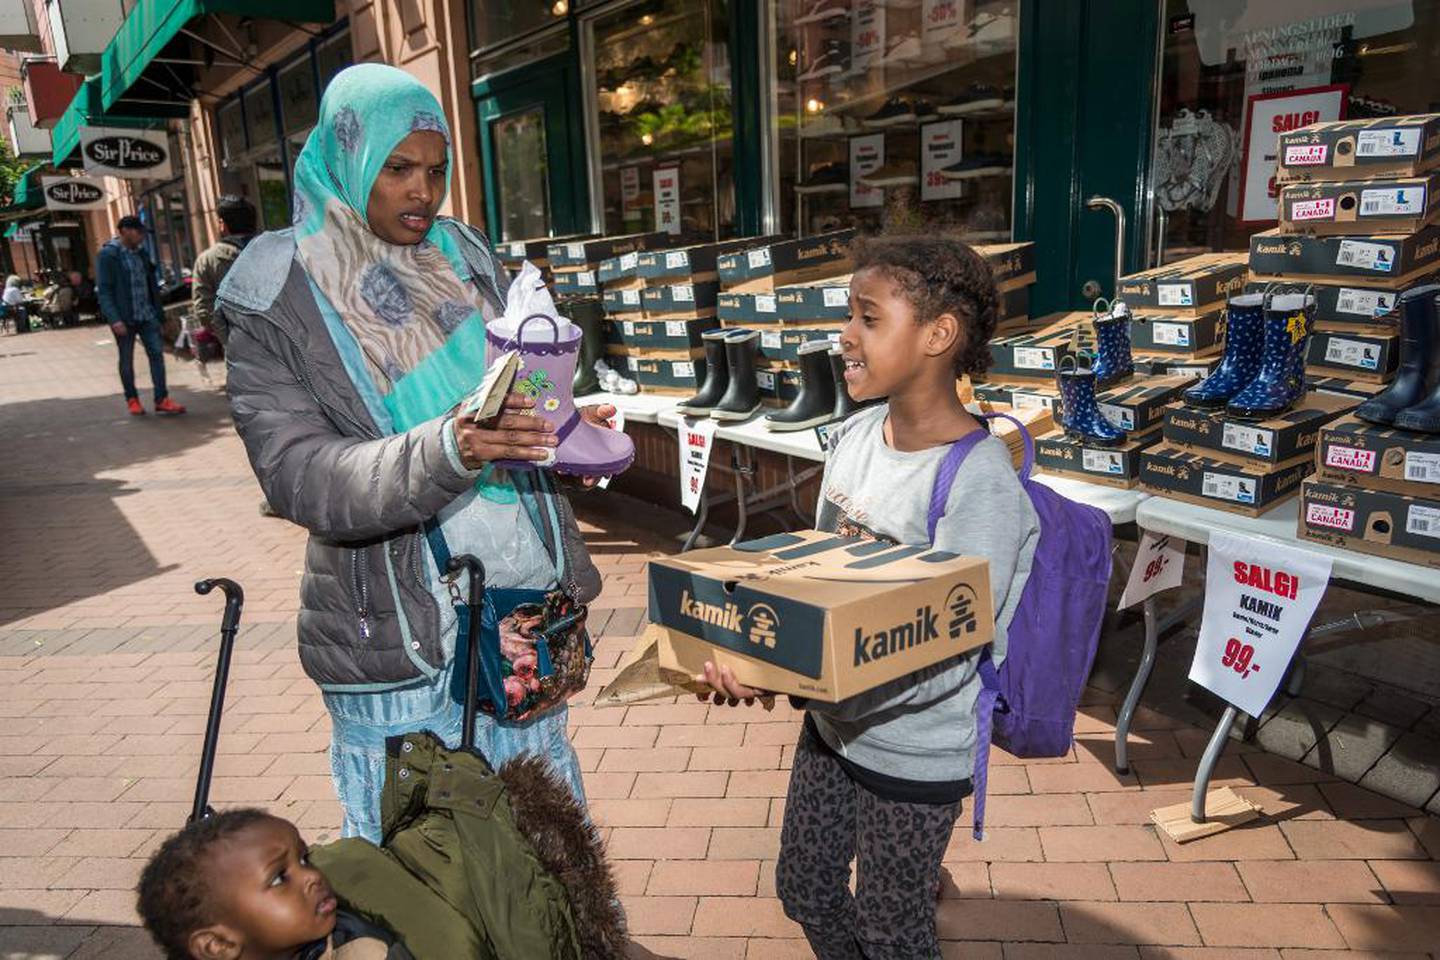 For 17 år siden kom Shabaan M. Hussein (32) fra Somalia til Norge som analfabet. Nå tar hun utdanning i helsearbeid. På handletur på Grønland i Oslo ser hun og datteren Hodan (8) på støvler, med sønnen Are (2) i vogna.